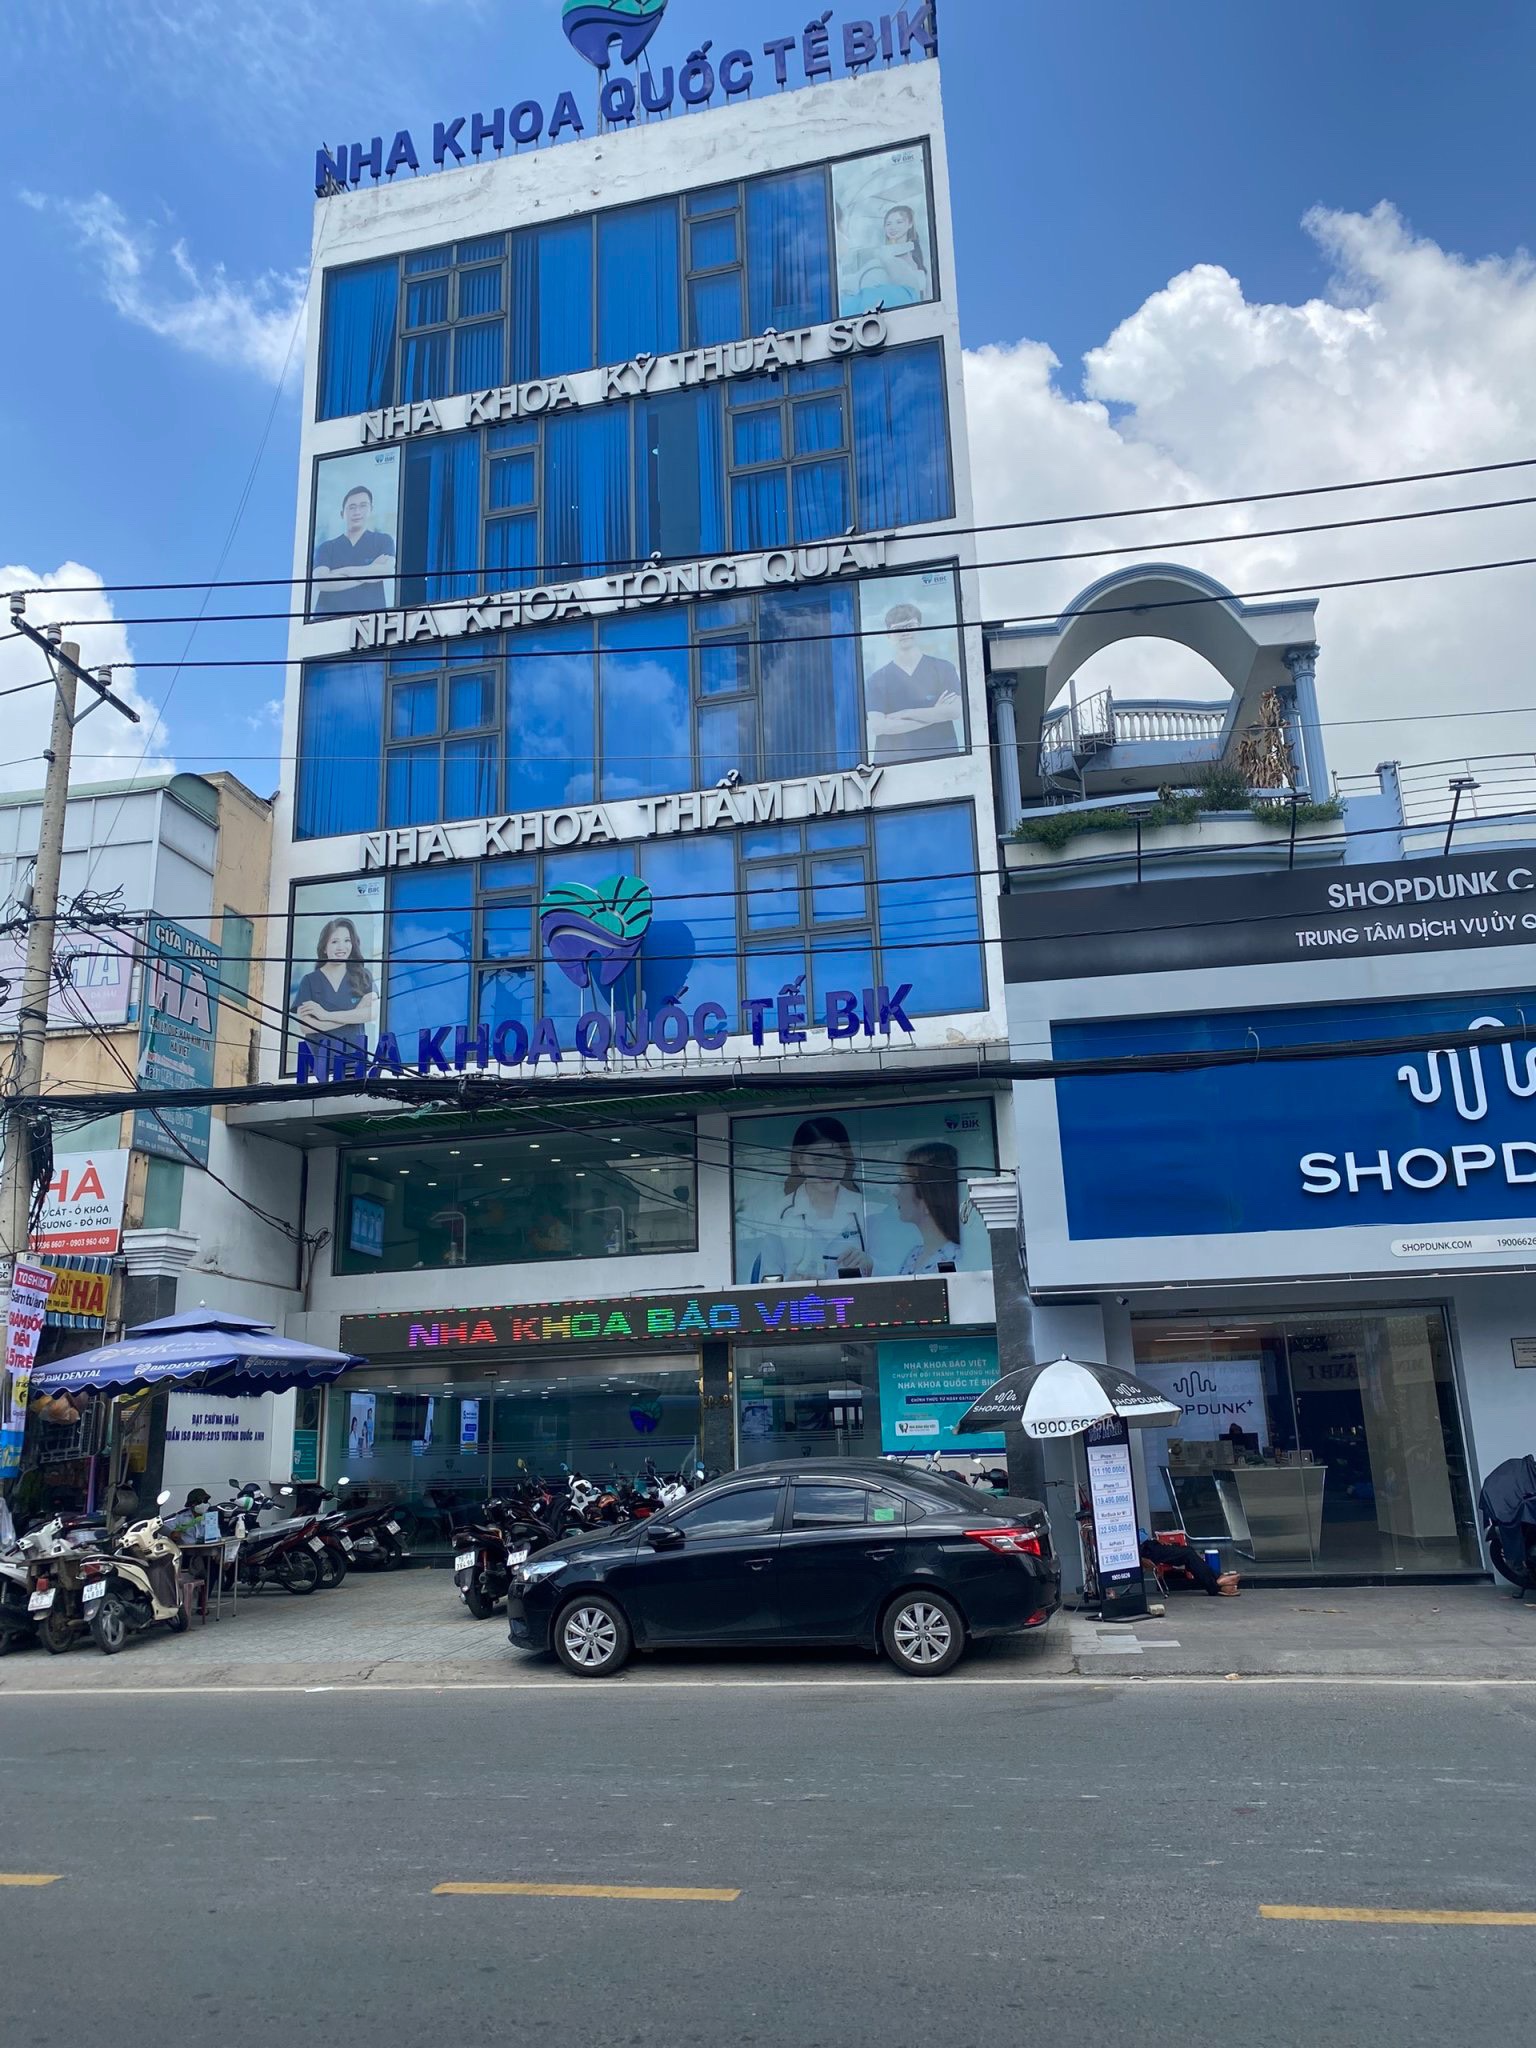 Bán nhà 3 tầng MT Lê Văn Việt, Quận Thủ Đức (4.2x25m) giá 21 tỷ, liên hệ: 0934177517 Quang Vũ